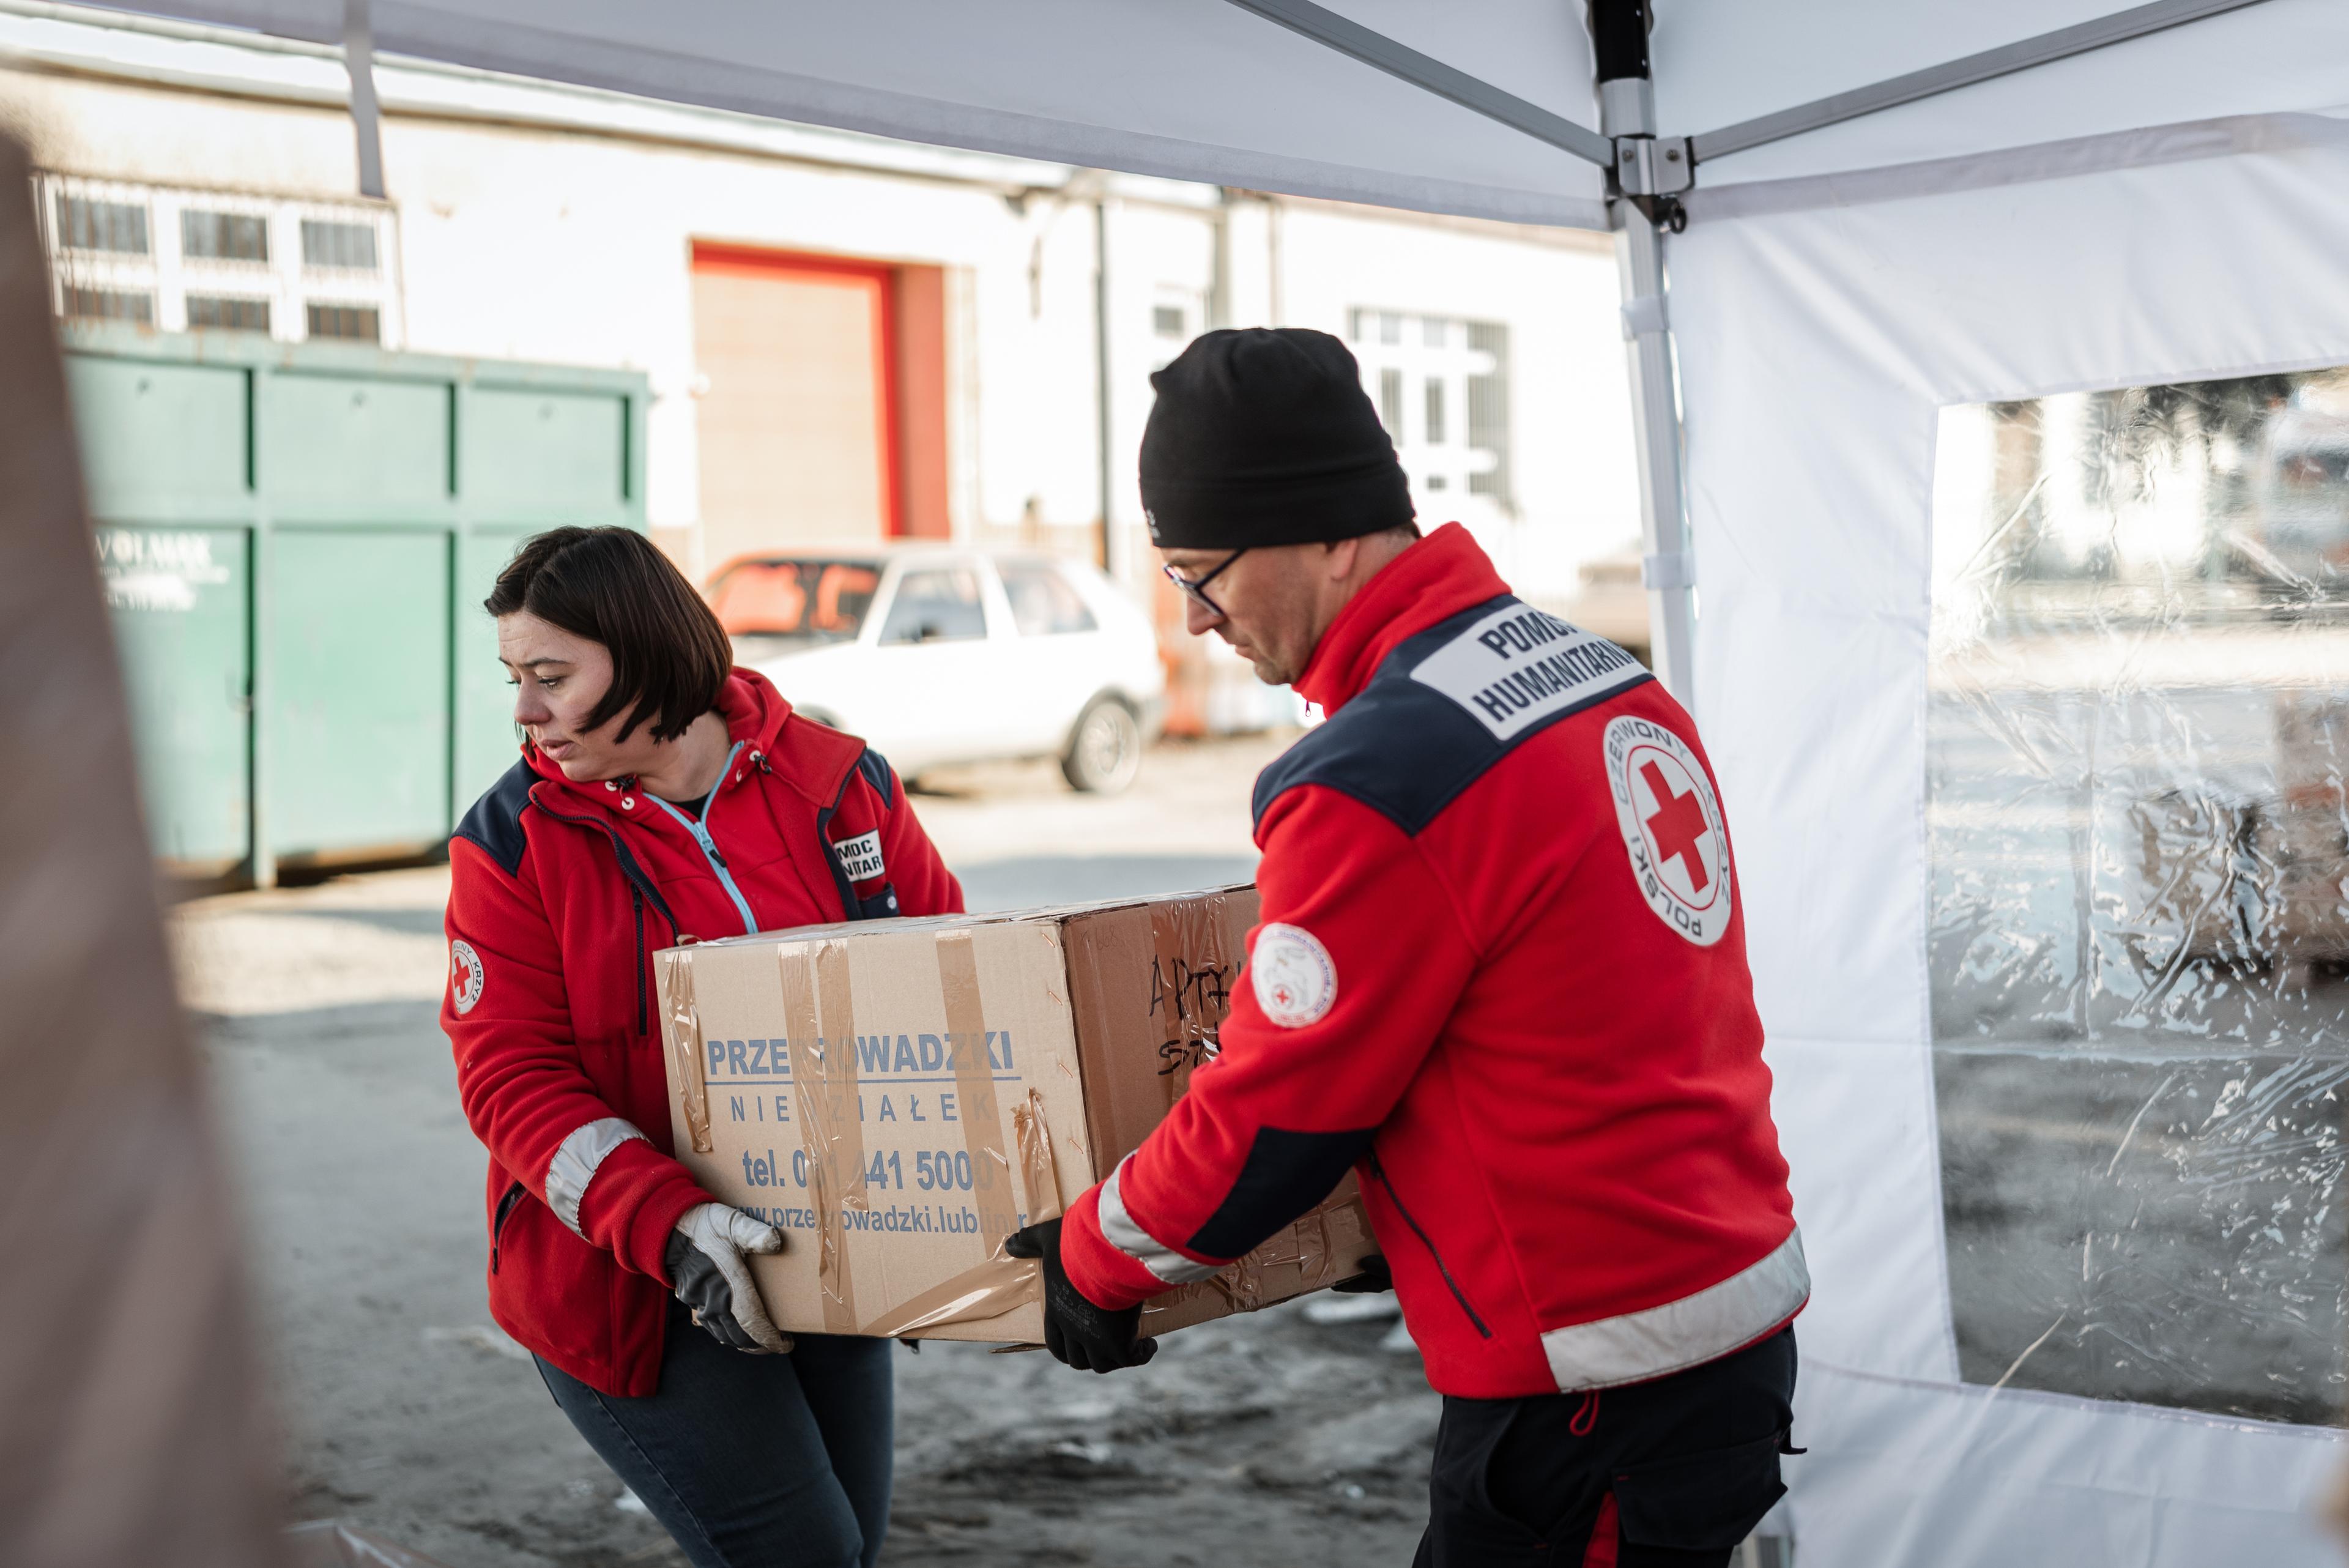 Une bénévole et un bénévole de la Croix-Rouge polonaise portent ensemble une caisse en carton. Il s'agit probablement de matériel de secours.